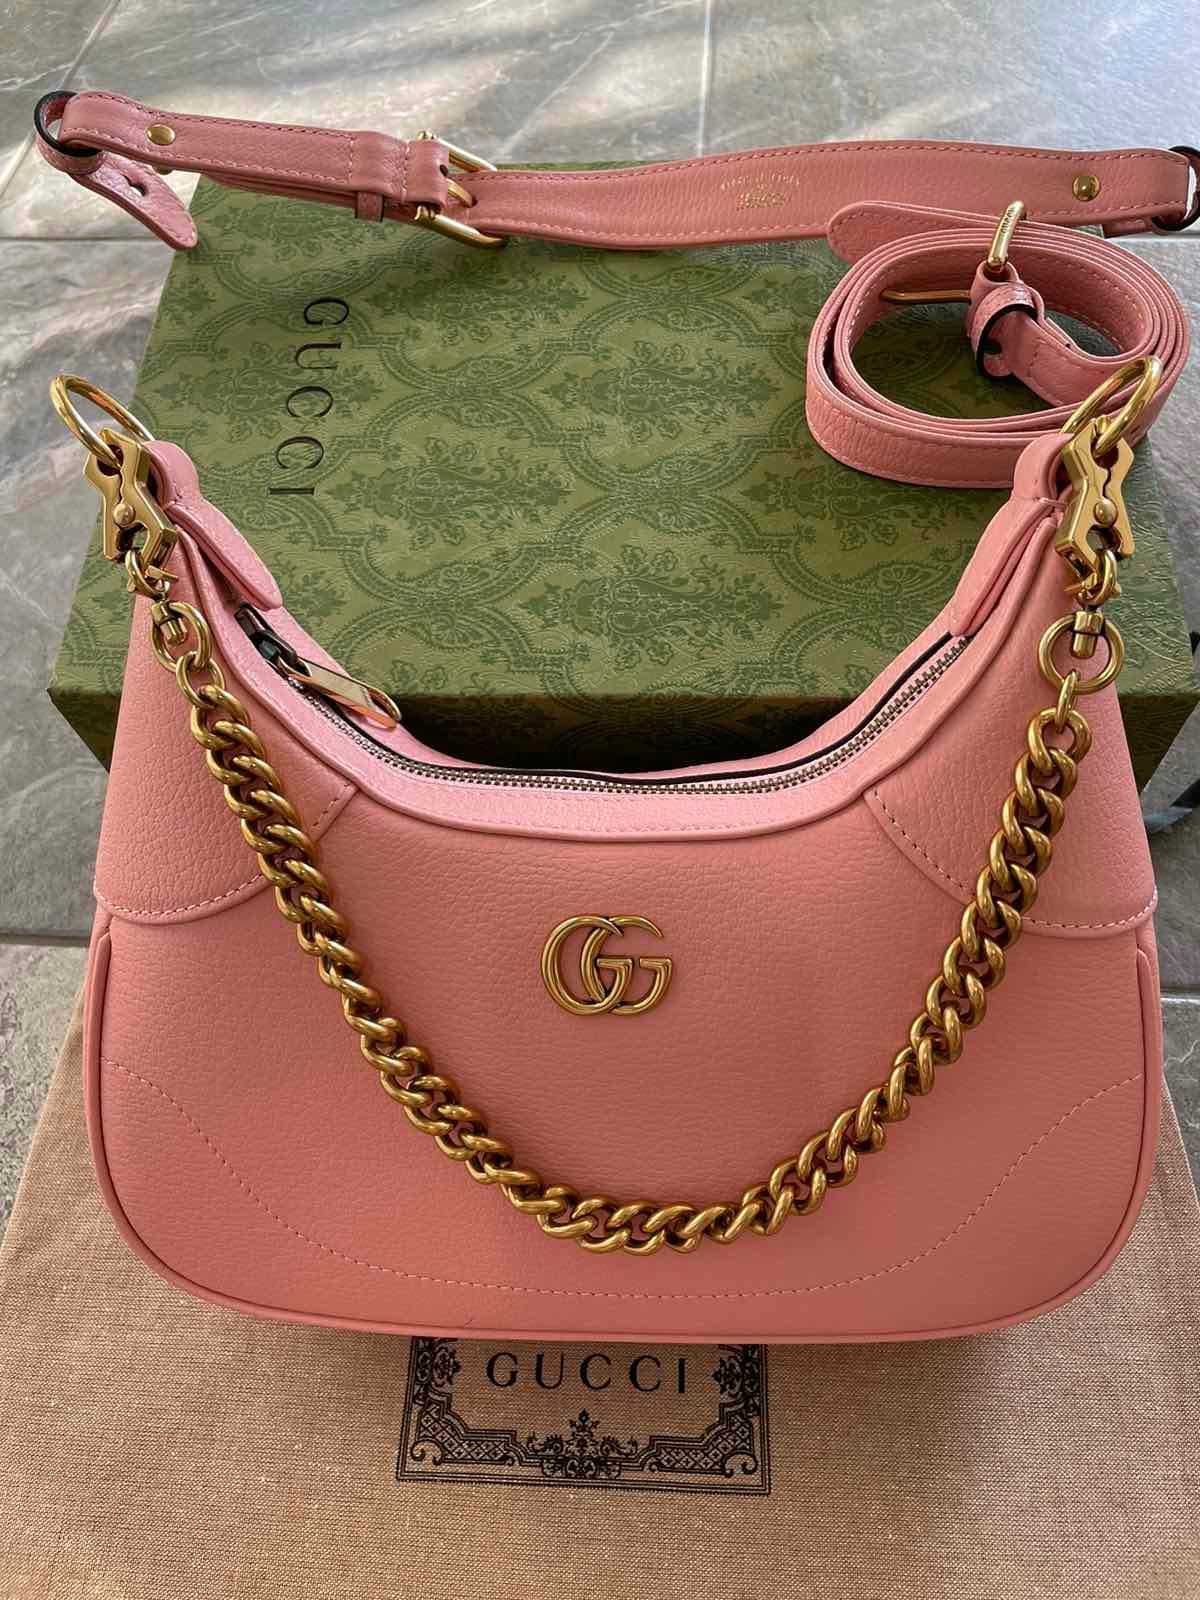 Geantă originală din piele roz Gucci, mâner și lanț Gucci Aphrodite